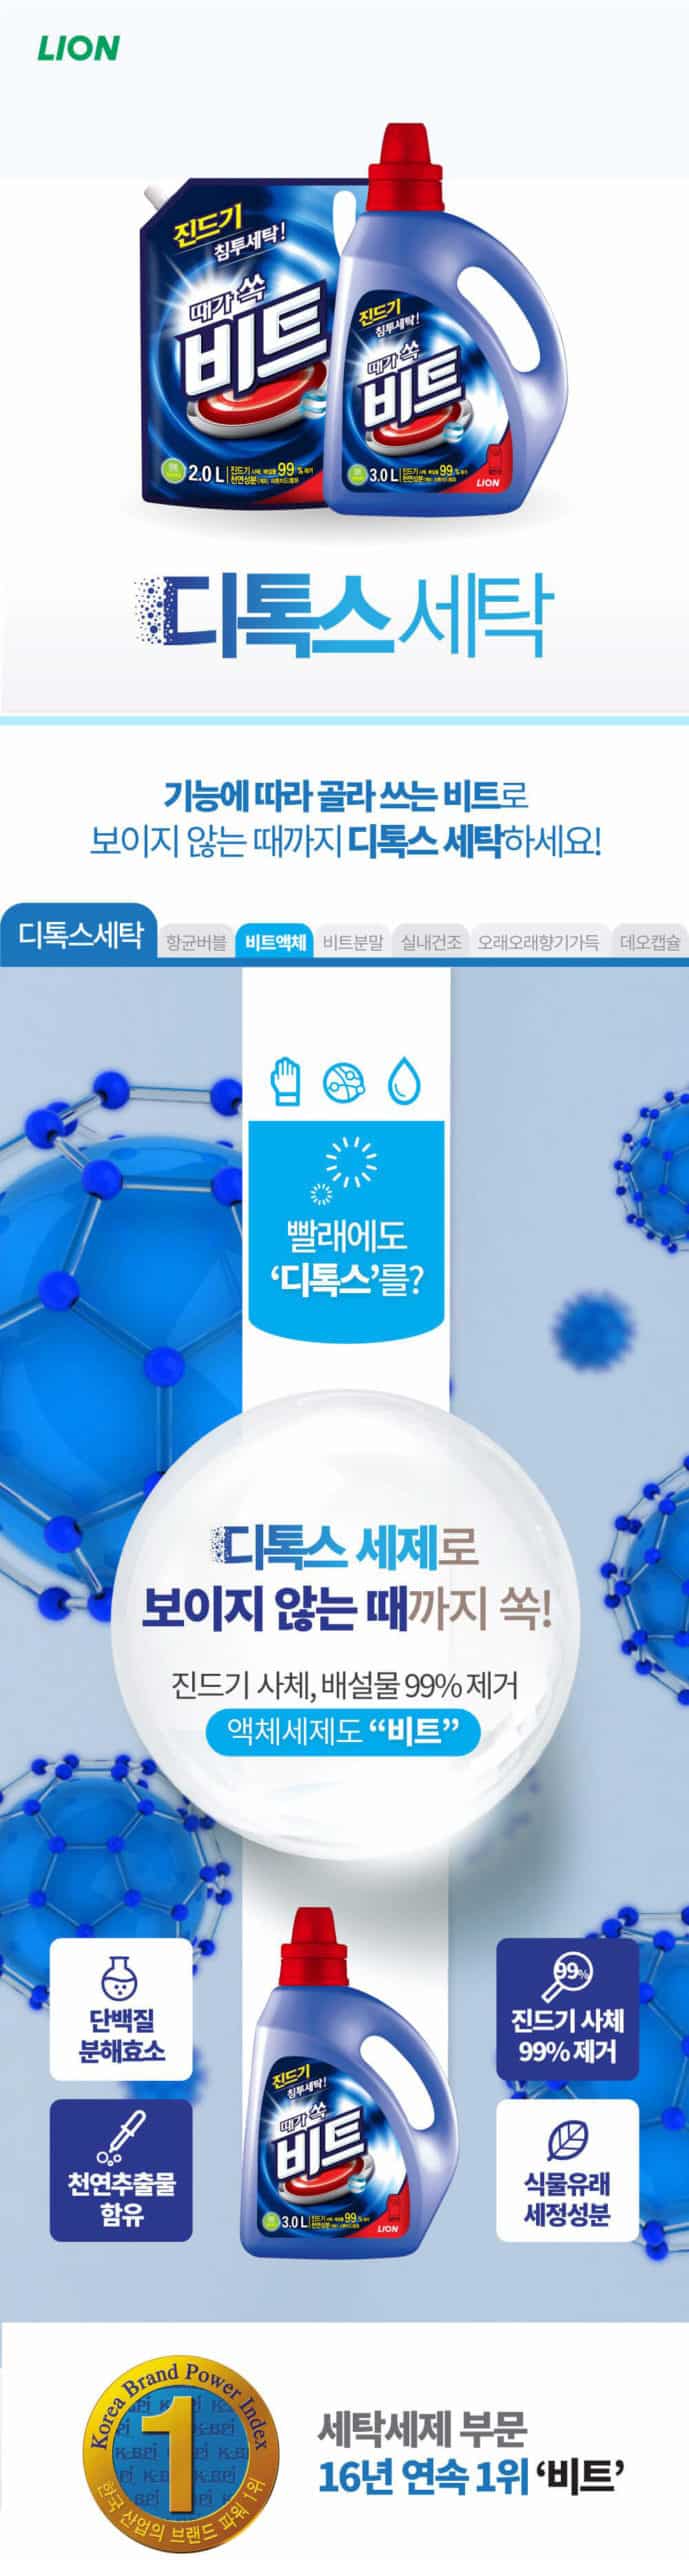 韓國食品-[LG Lion] BEAT Anti-dust mite Liquid Laundry Detergent Refill [Drum] 2L